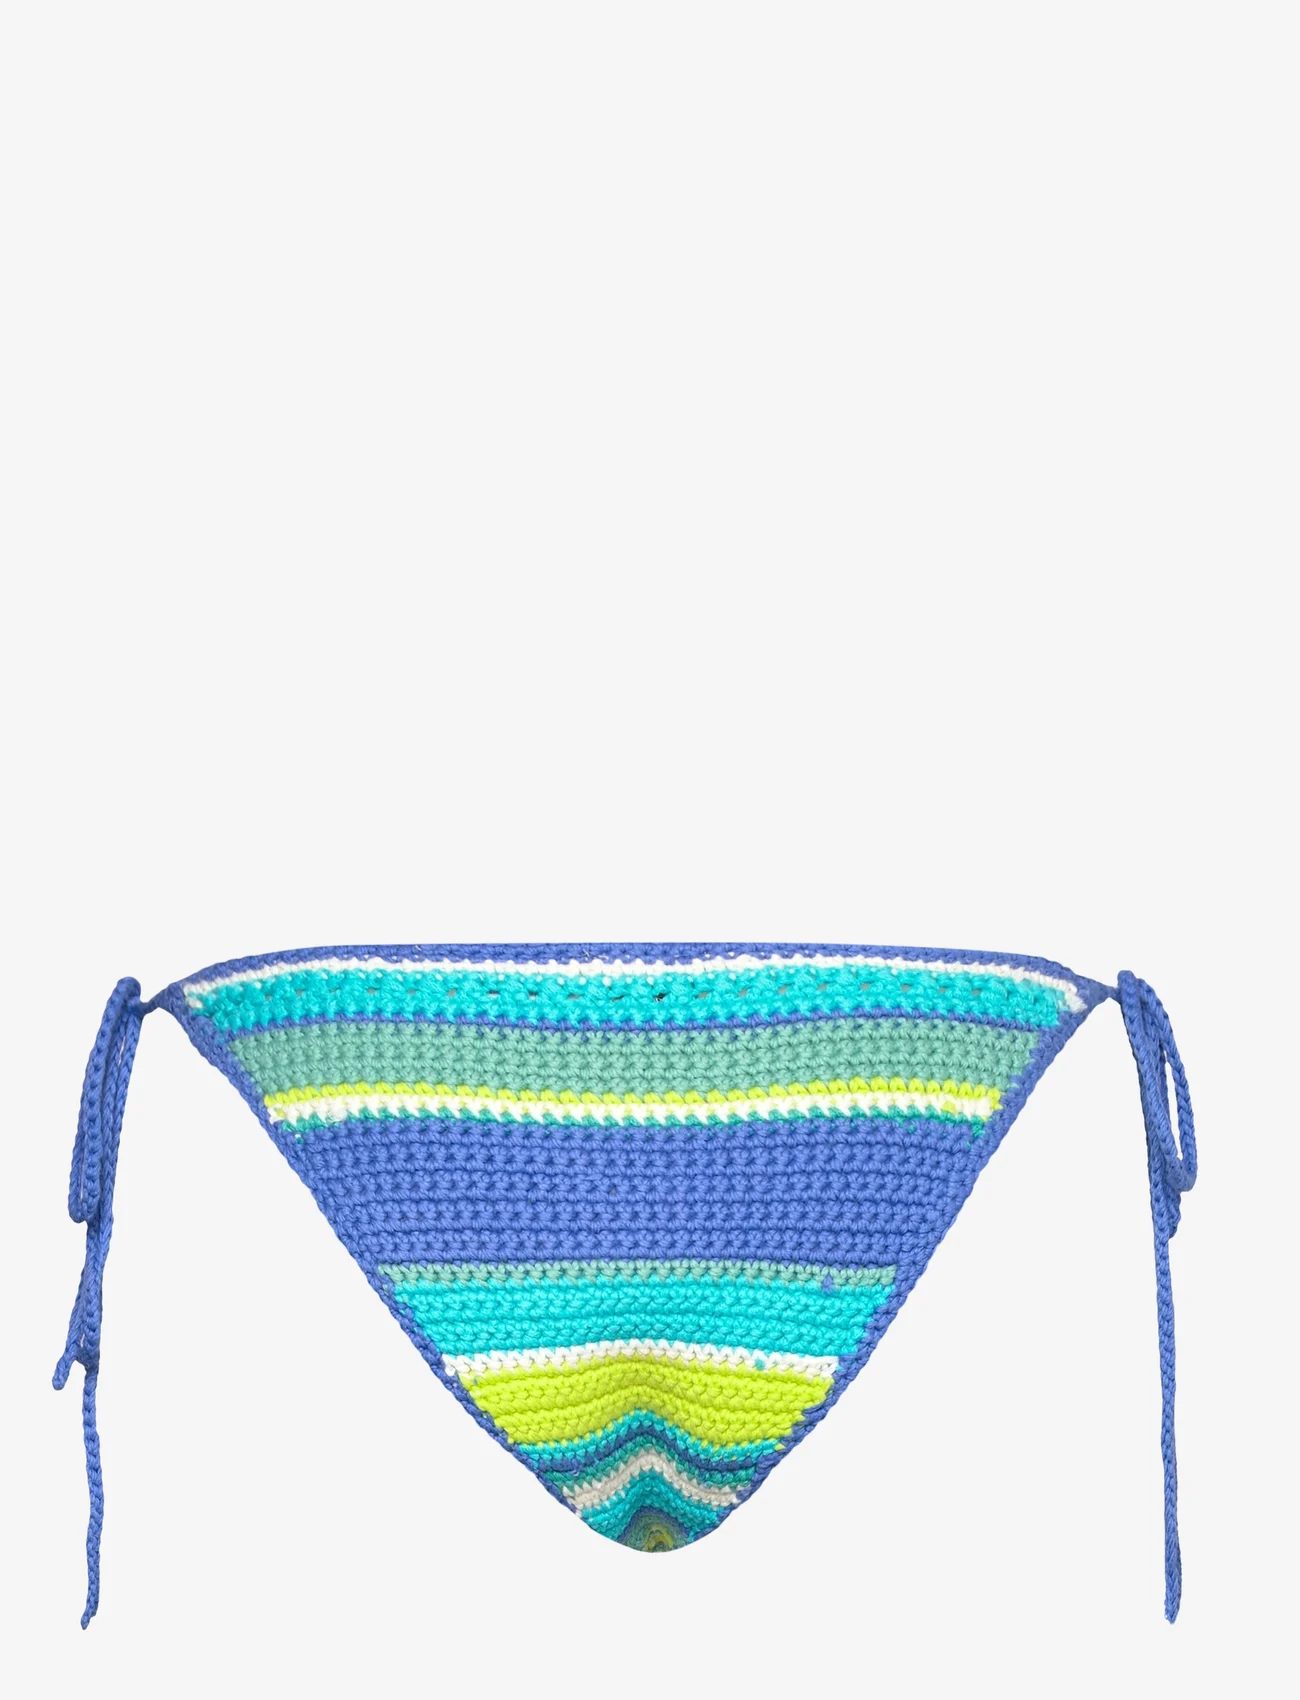 Ganni - Crochet Swimwear - side tie bikinitrosor - blue curacao - 1